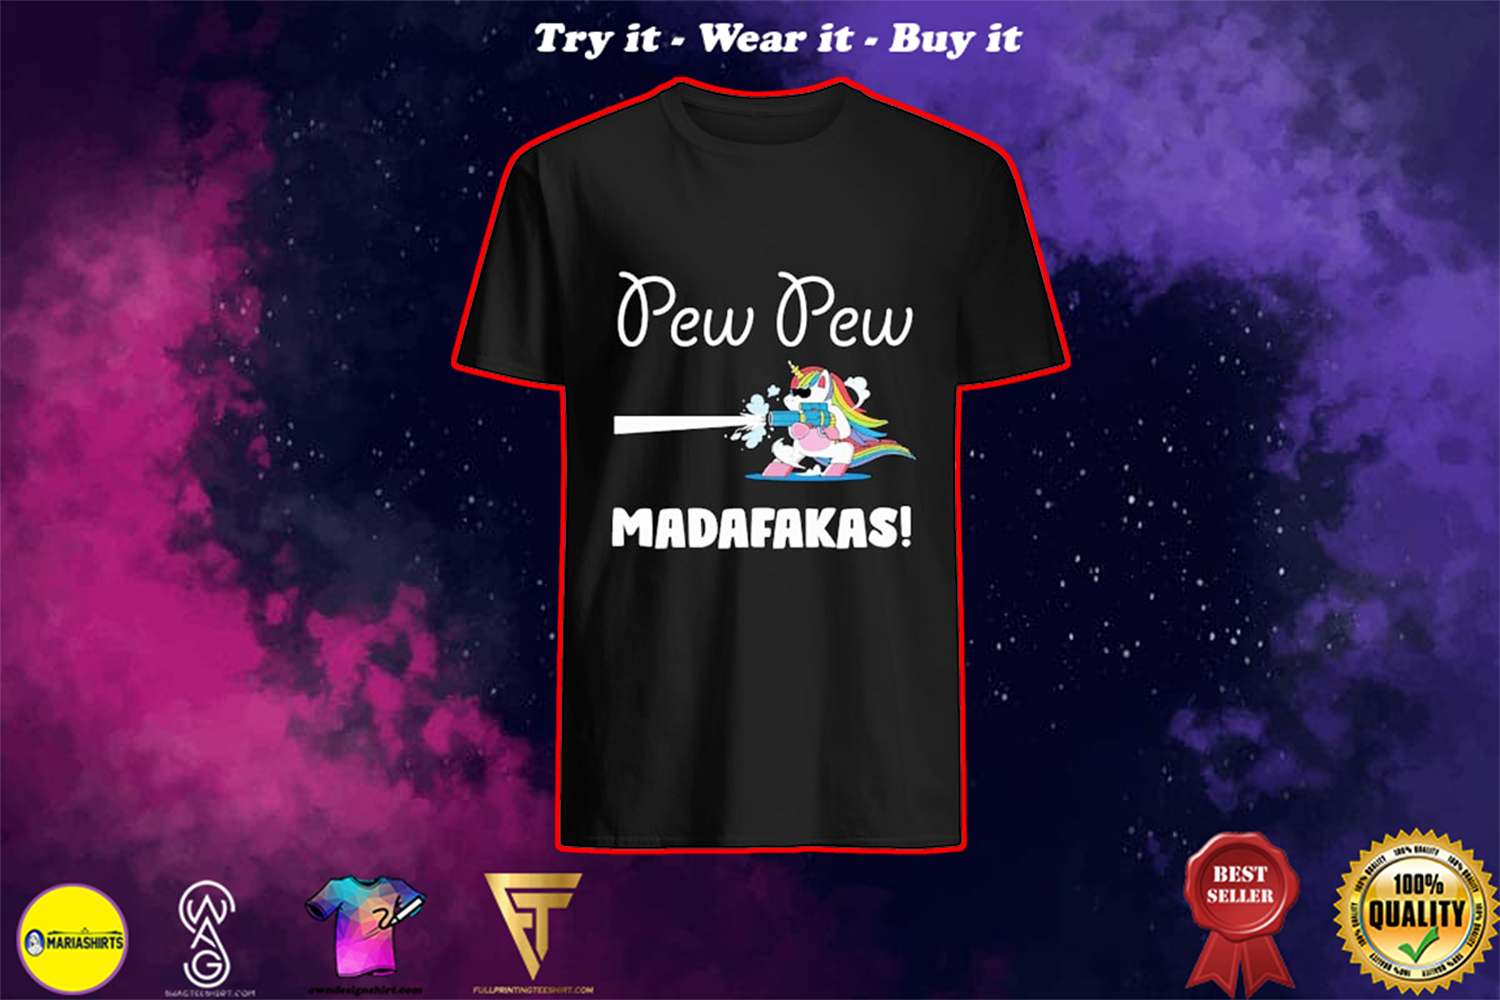 pew pew madafakas unicorn shirt - the limited edition